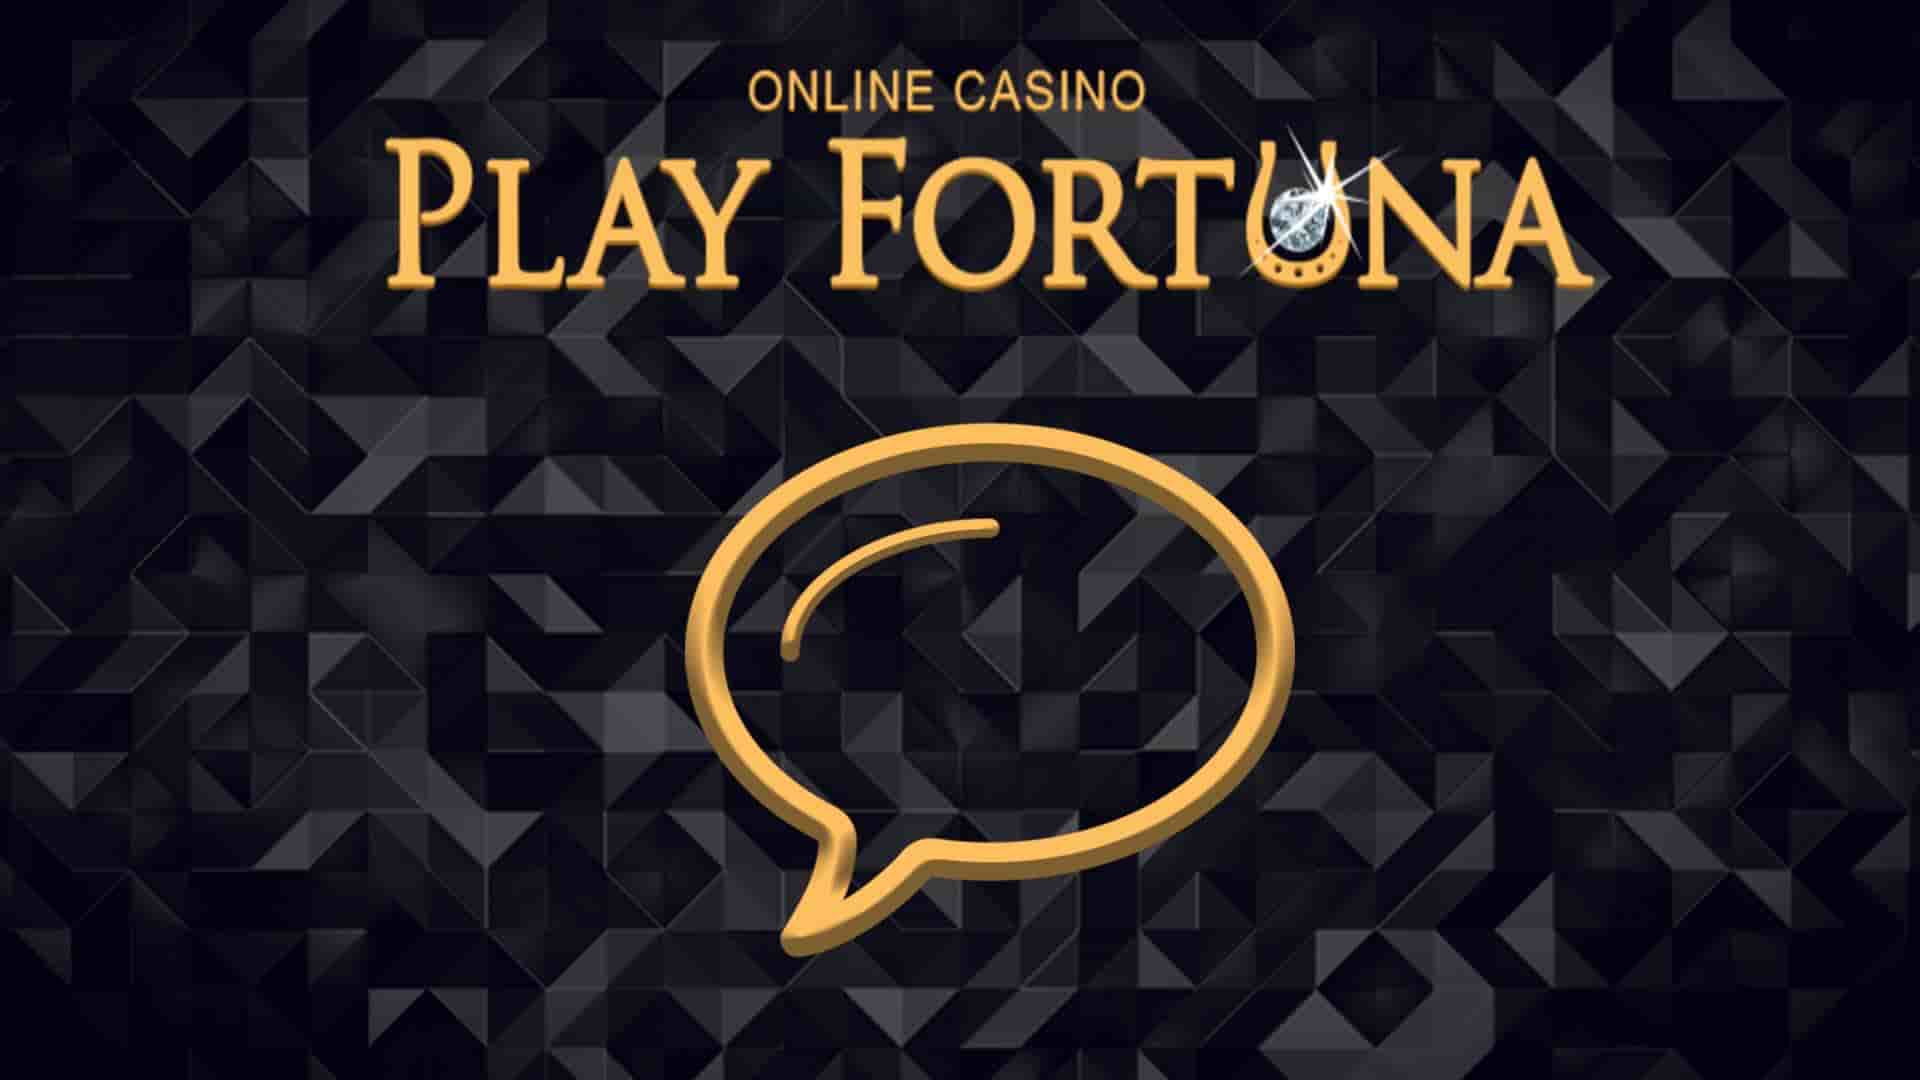 Play Fortuna Официальный Сайт: Портал к Игровым Удовольствиям